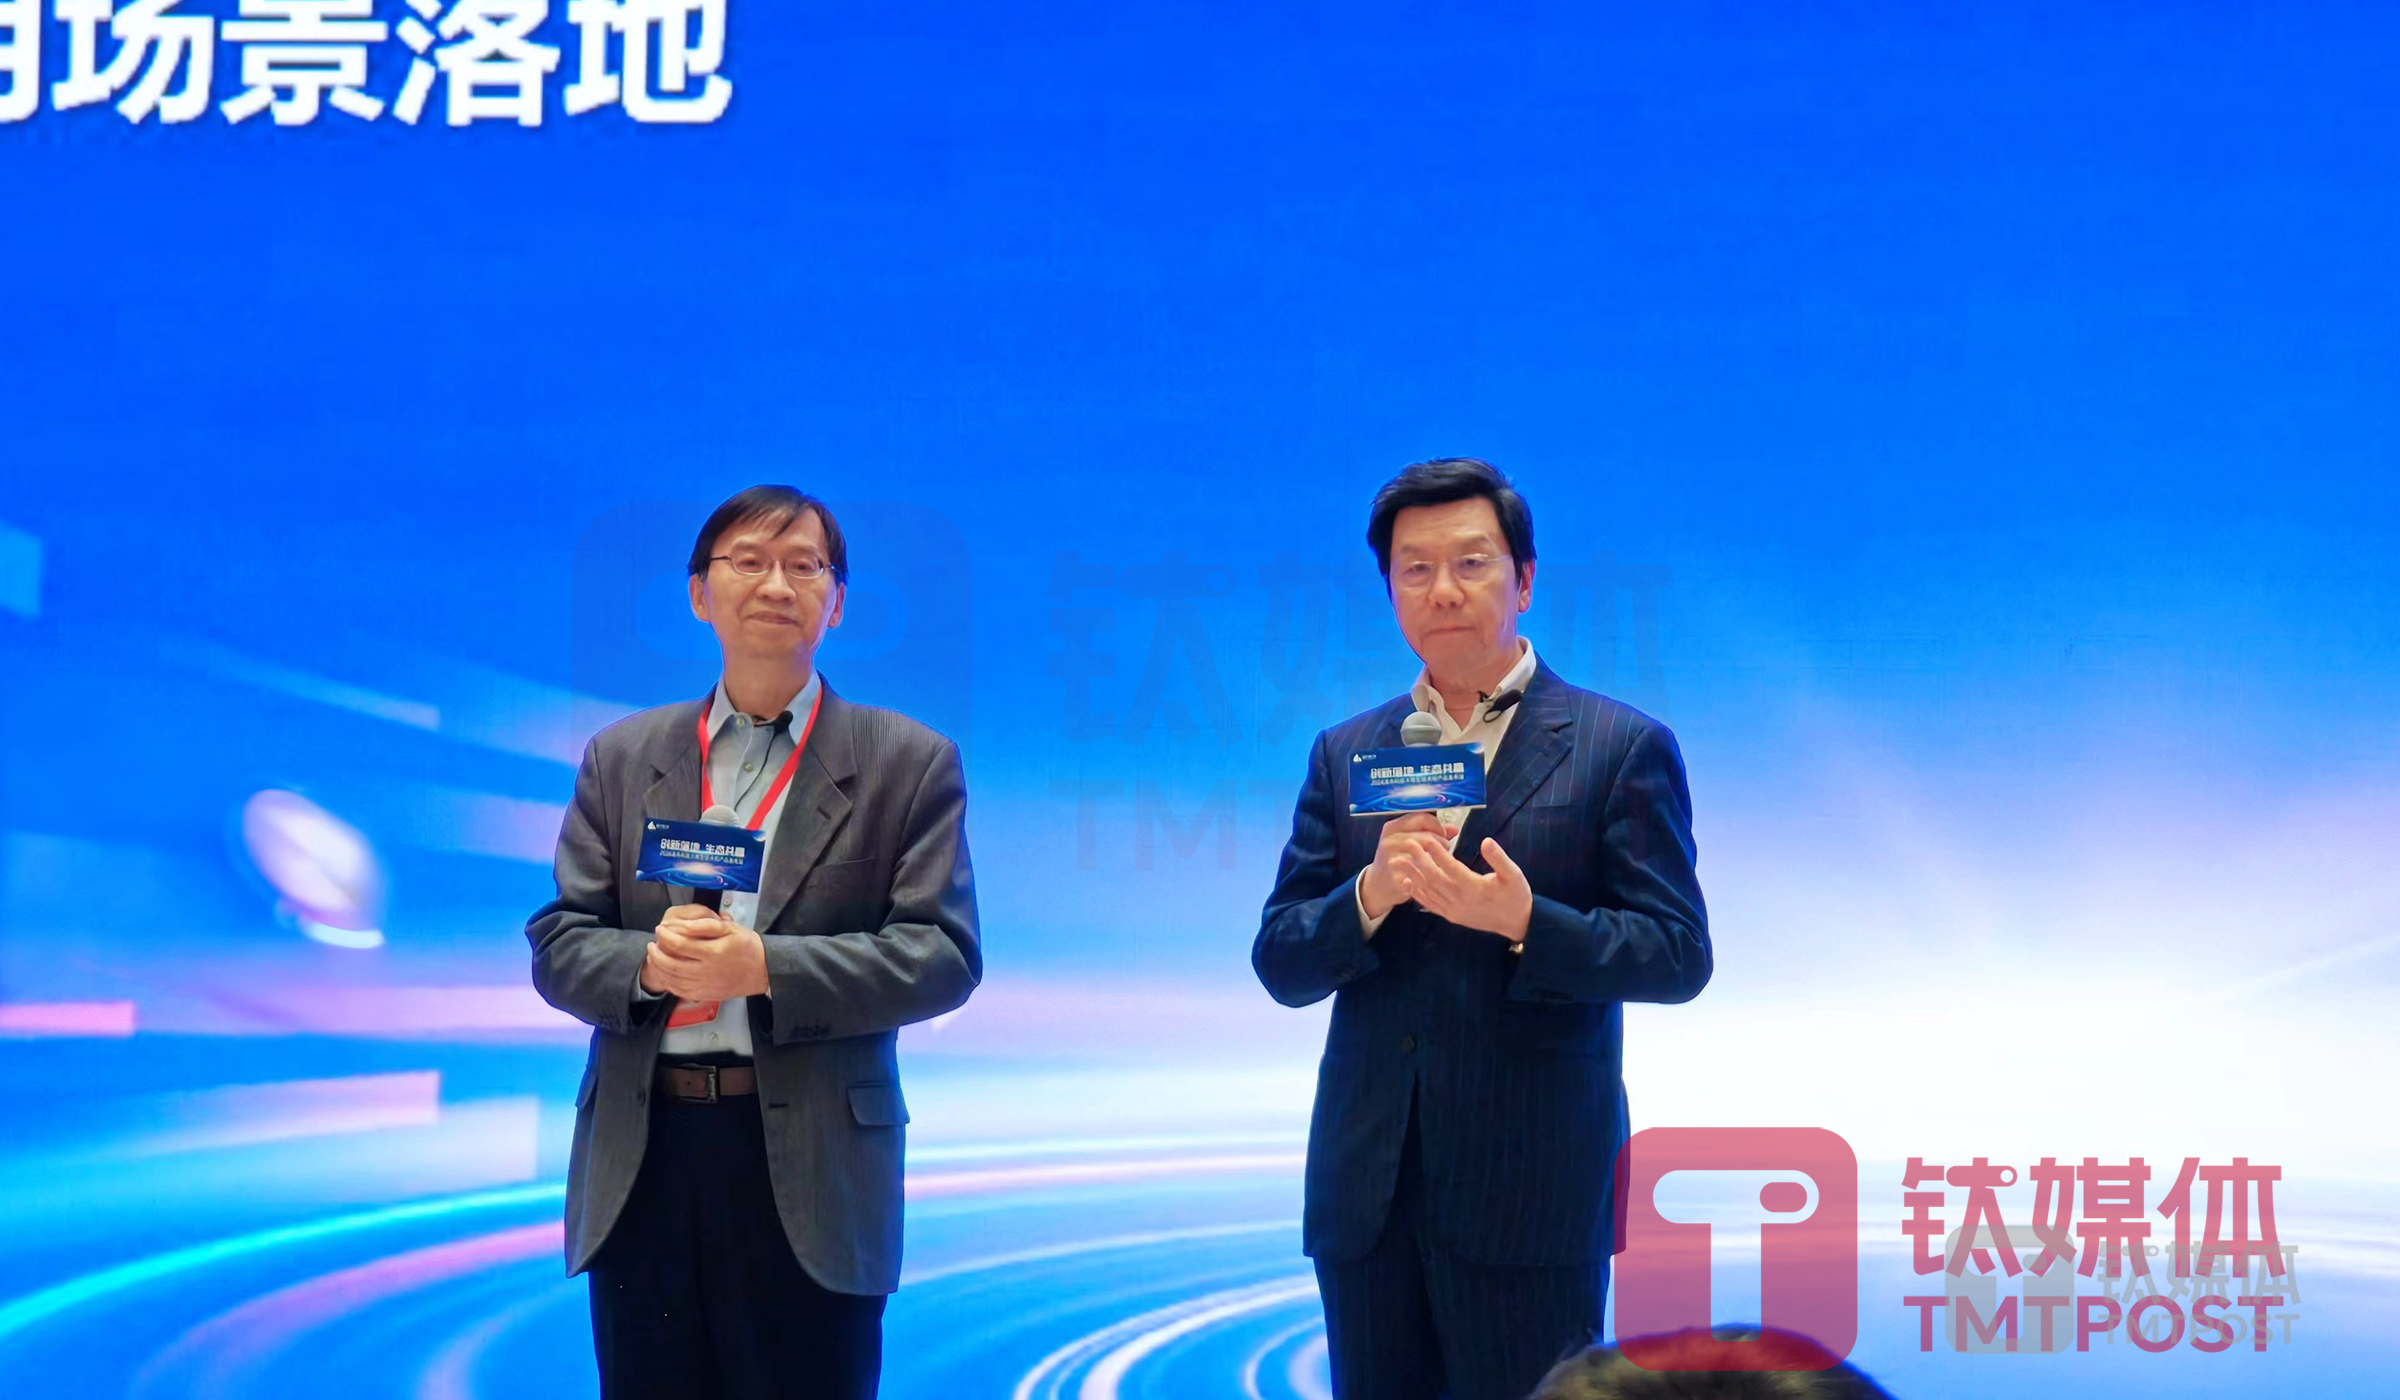 图左是澜舟科技创始人、CEO周明，图右是零一万物CEO李开复